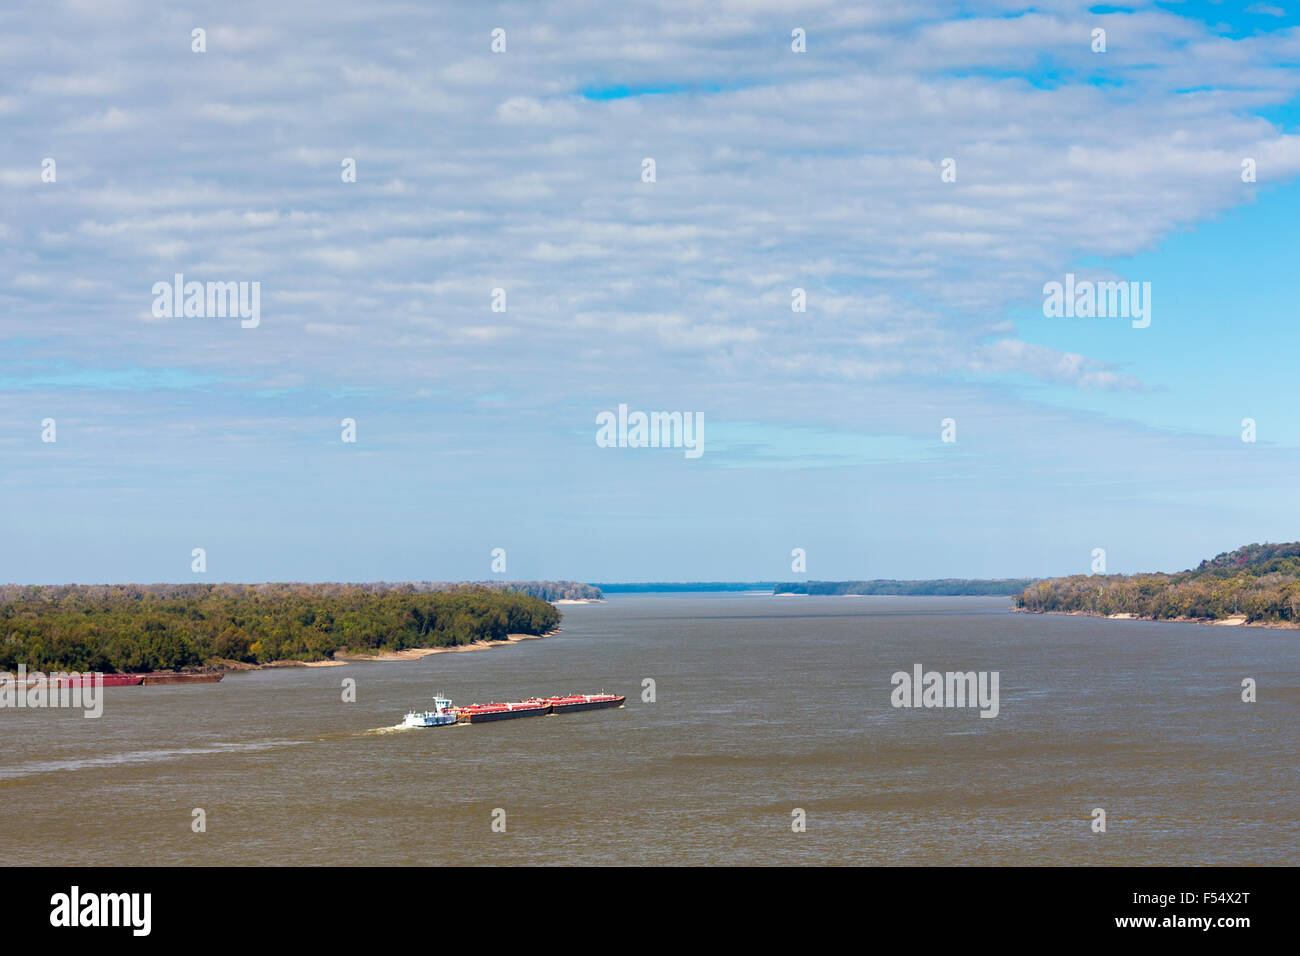 La Mississippi River Barge lavorando come bulk carrier trasporta un carico a Natchez, STATI UNITI D'AMERICA Foto Stock